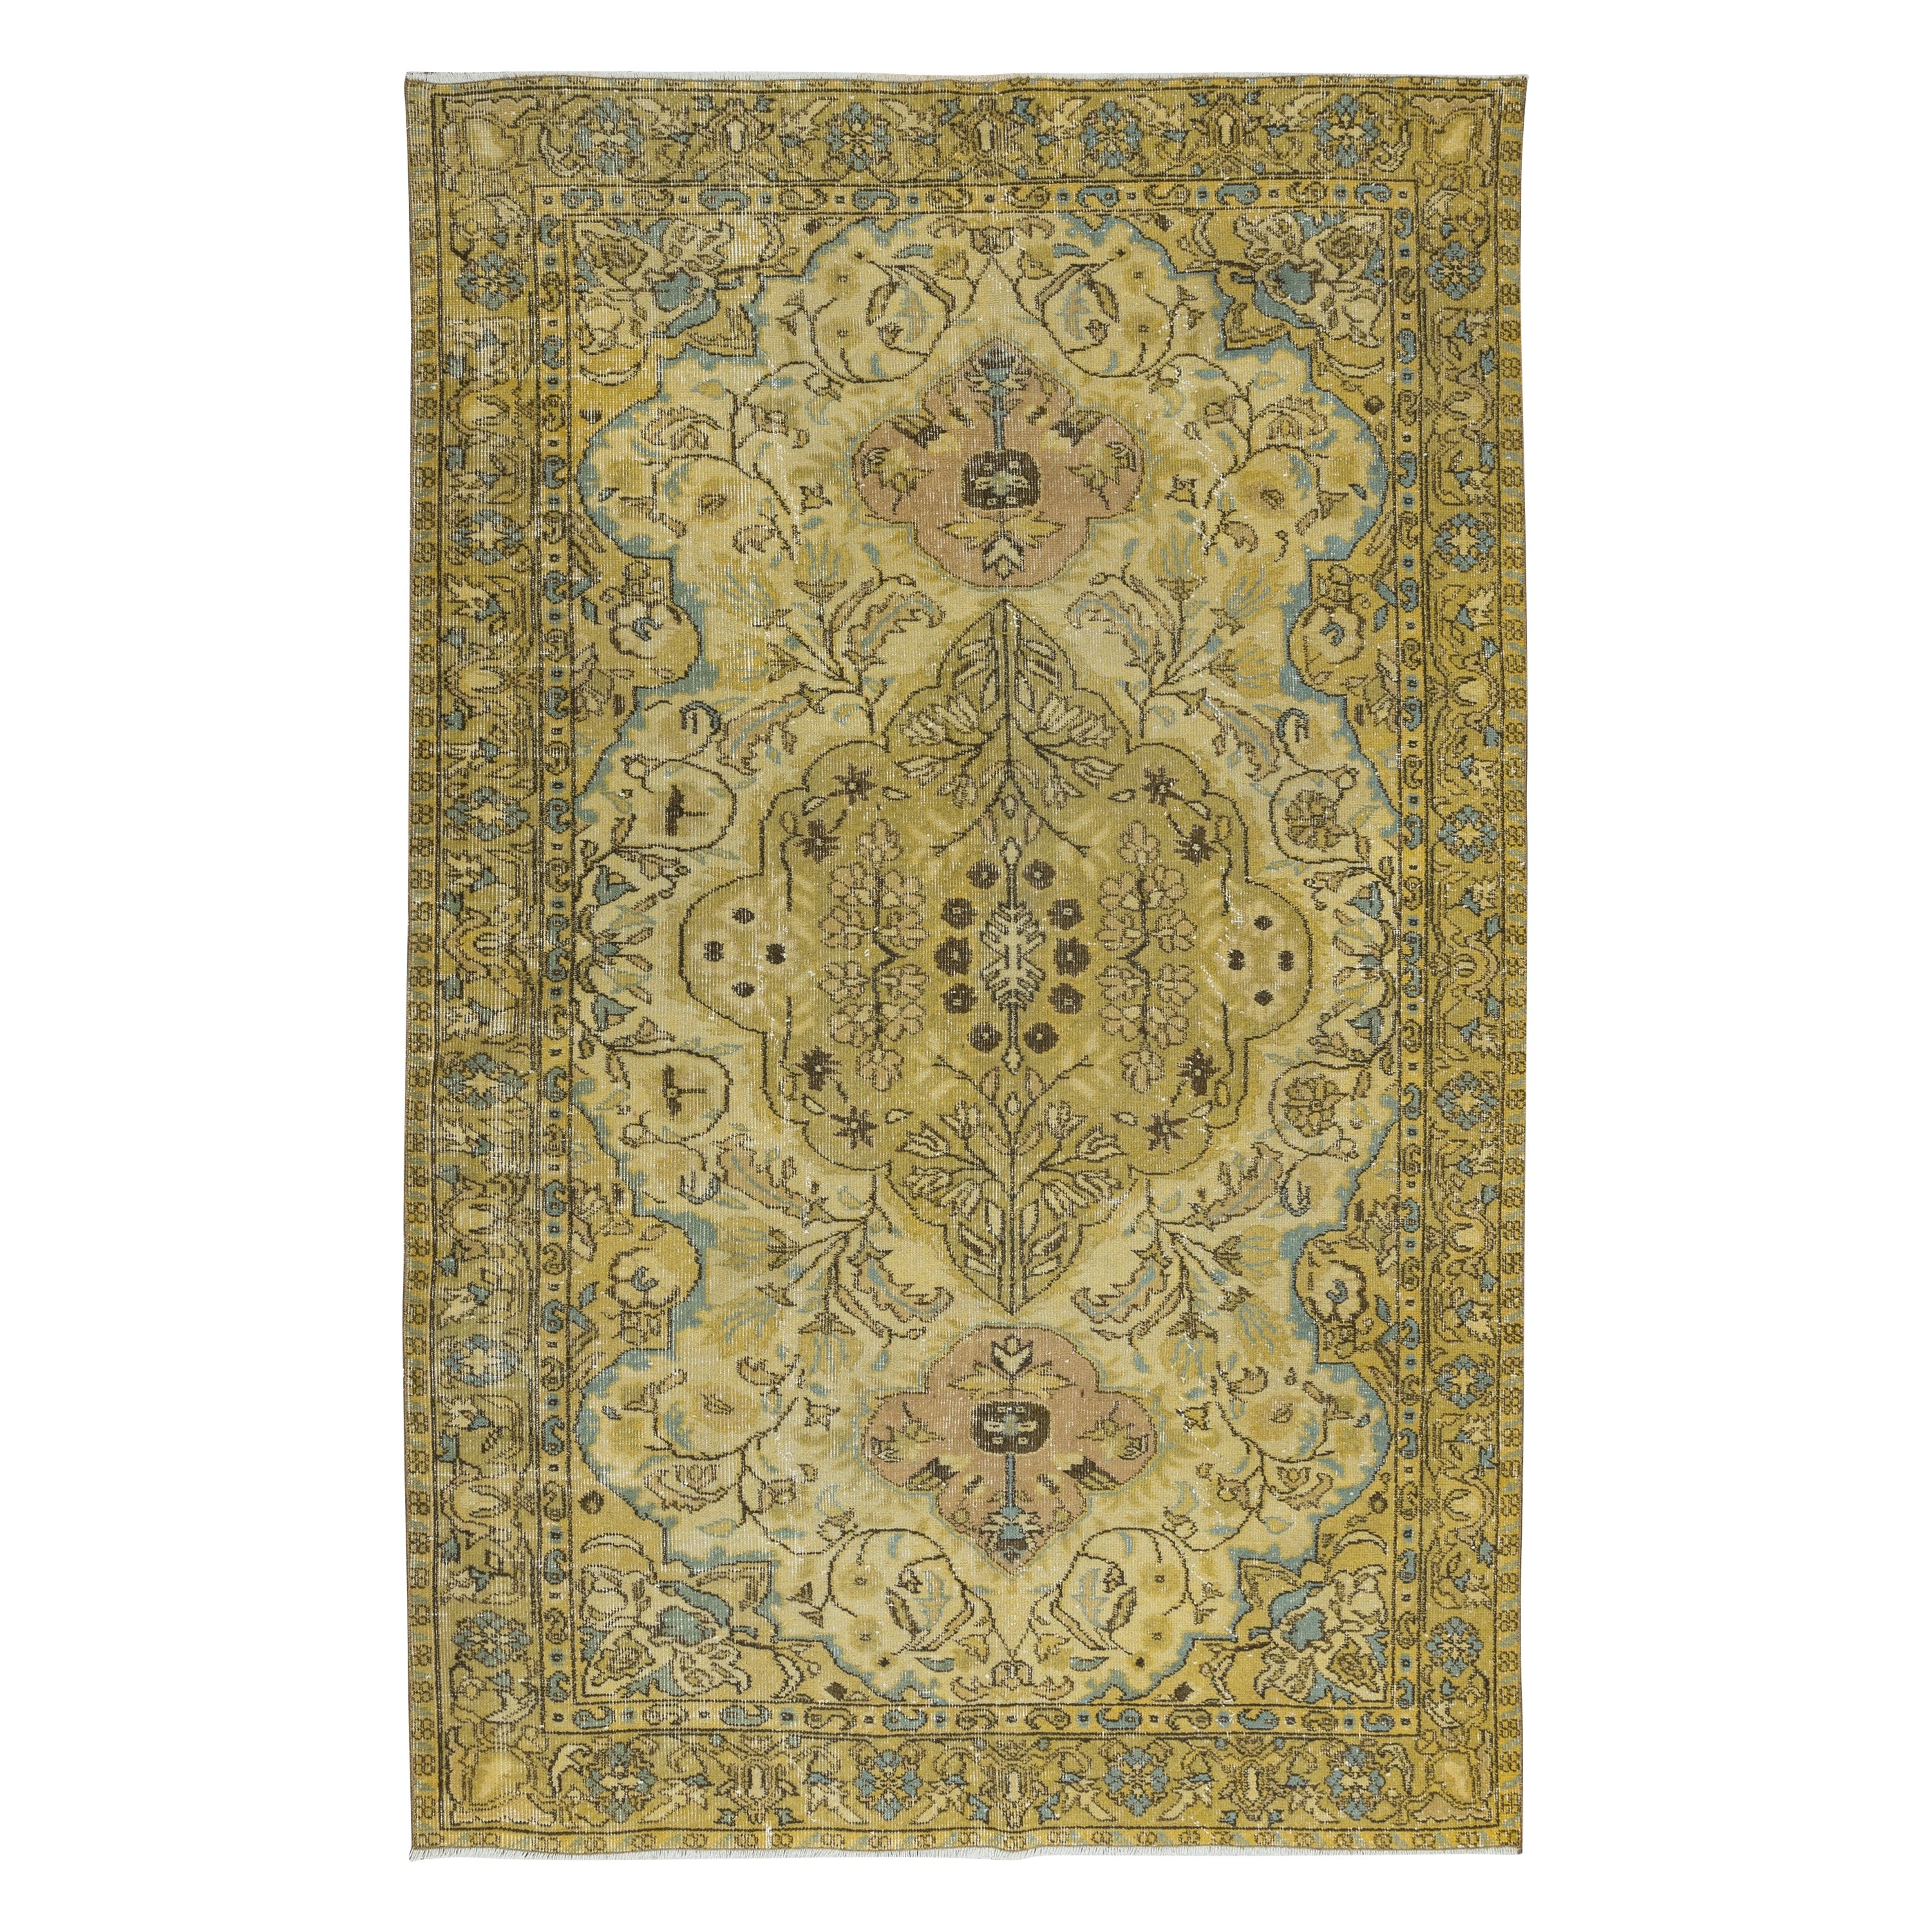 5.6x8.8 Ft Exquisiter gelber türkischer Teppich, moderner, geblümter, handgefertigter Teppich